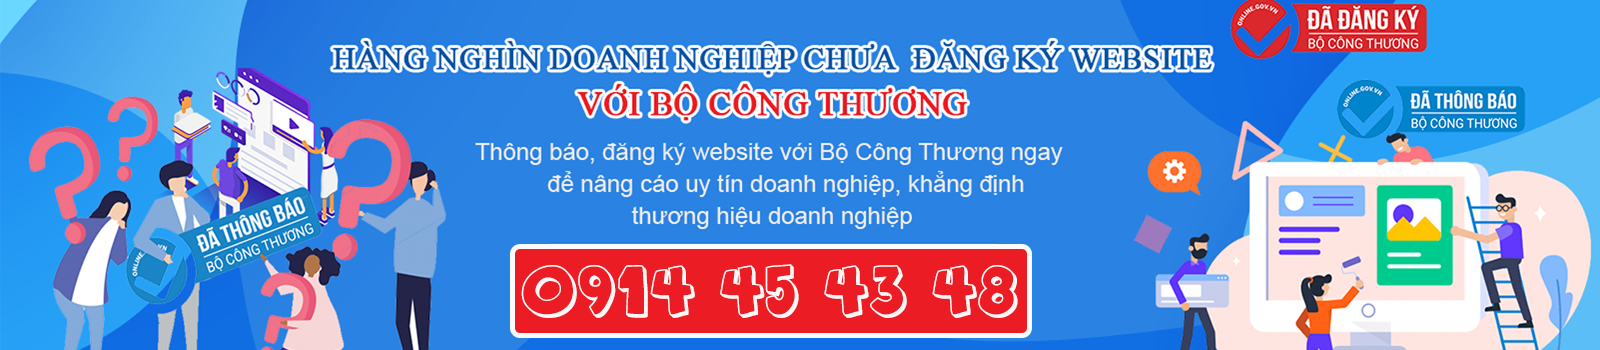 Đăng ký Website Bộ công thương Quảng Ngãi